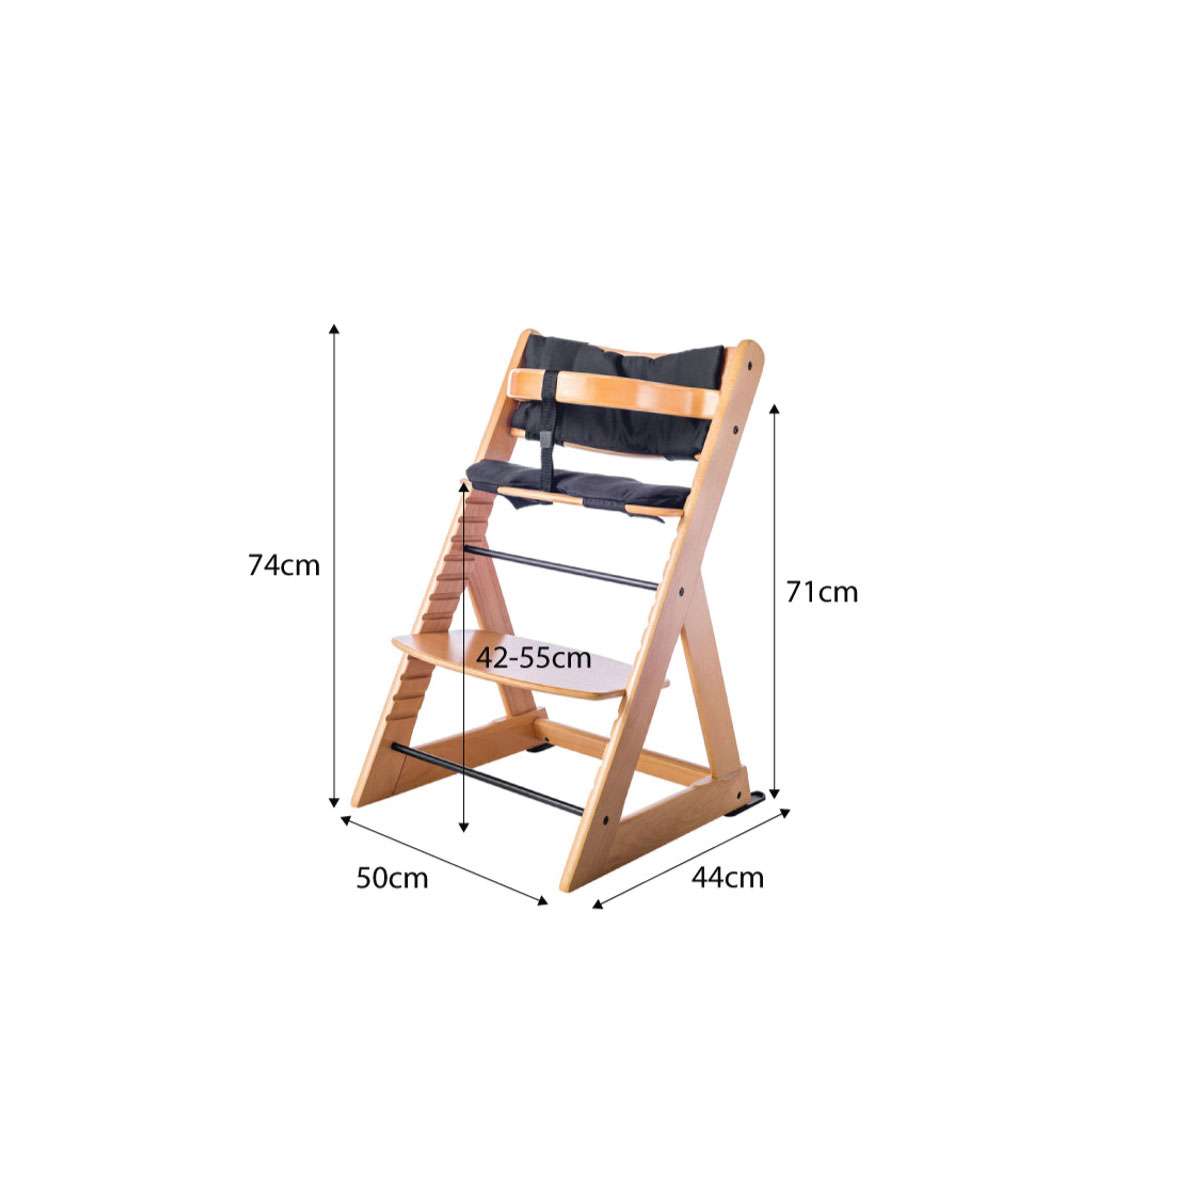 Soho Wooden Highchair - Natural